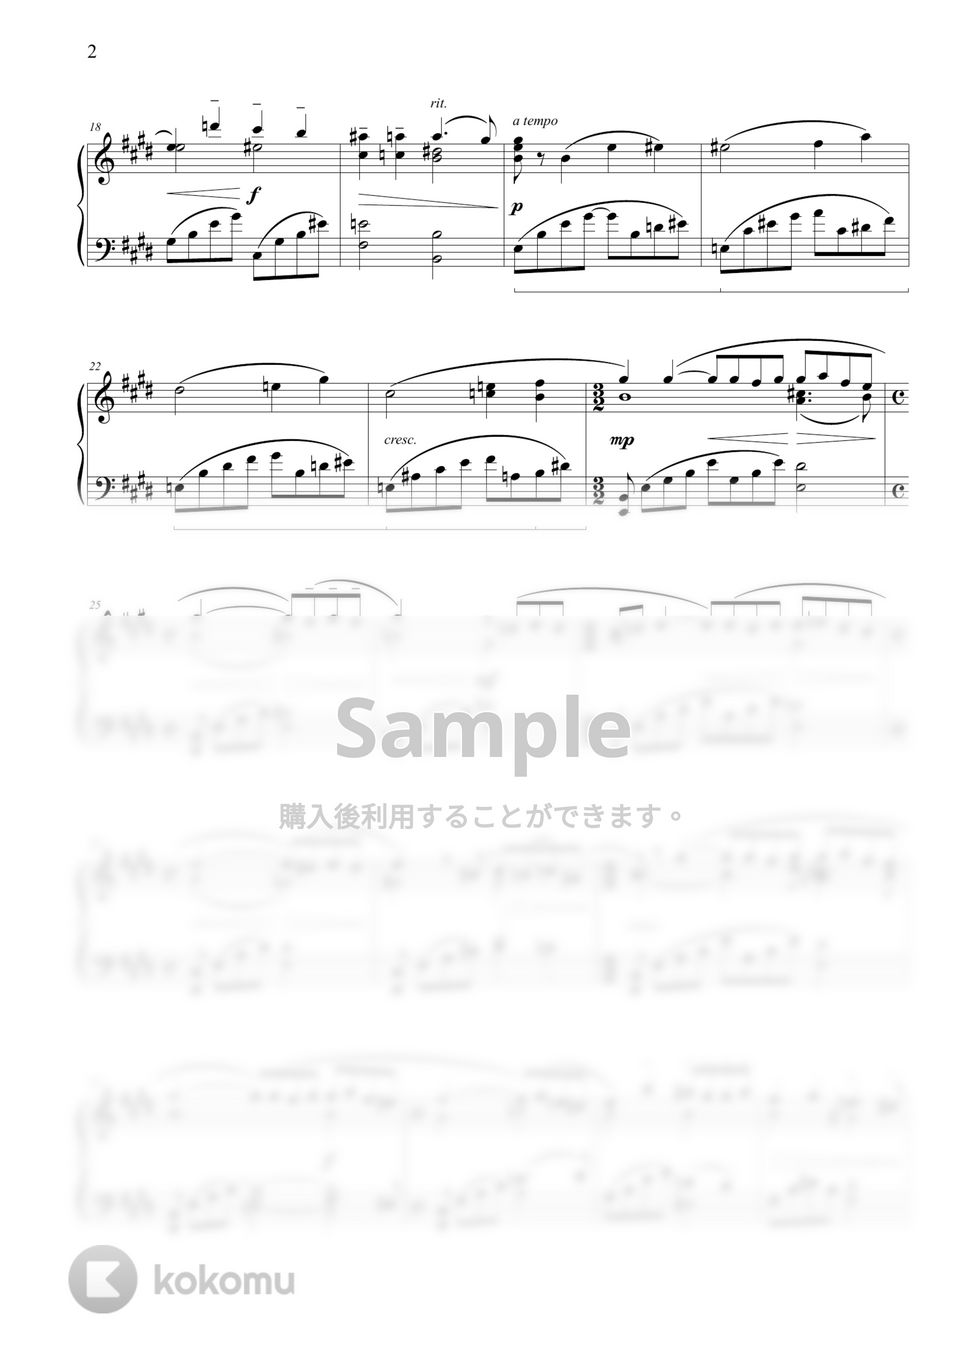 ラフマニノフ - ピアノ協奏曲第2番第2楽章 by THIS IS PIANO